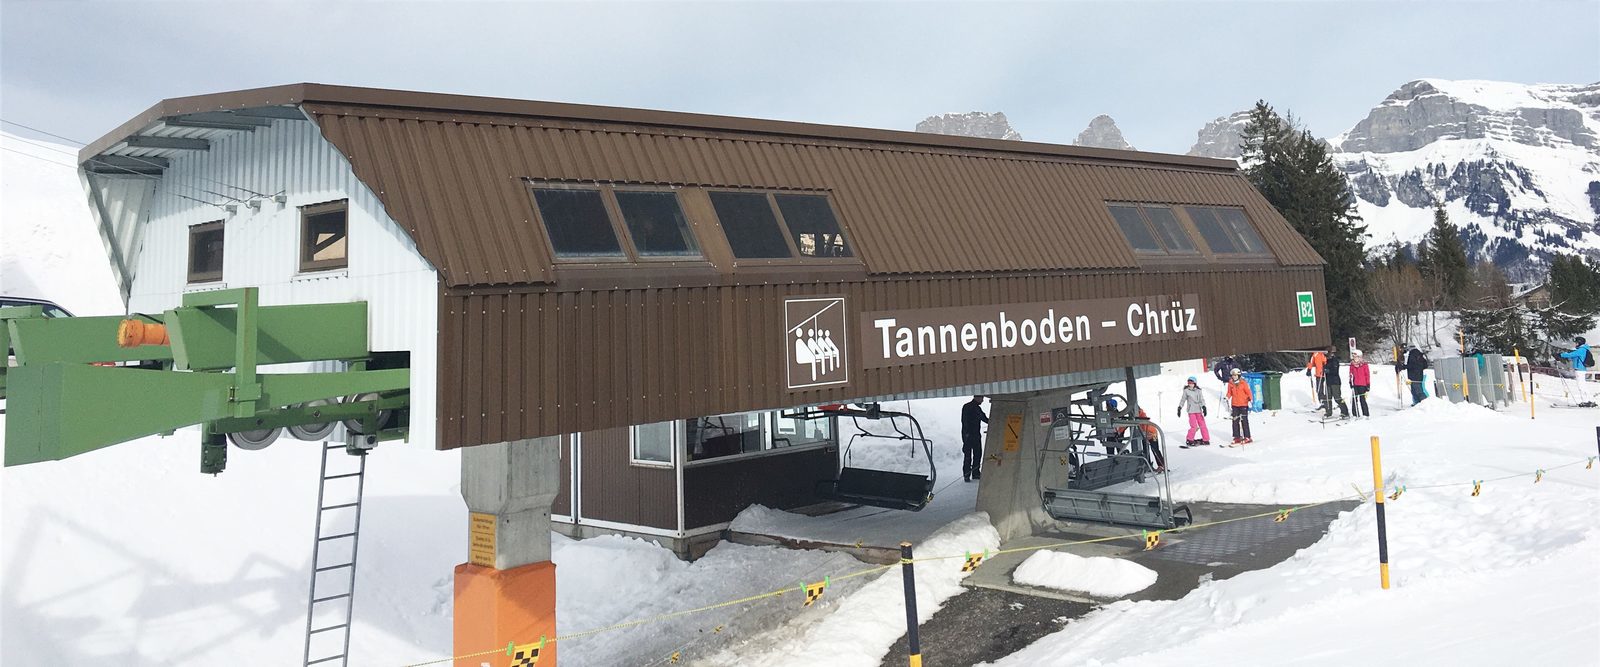 Der Flumserberg in der Nähe von Resort Walensee Schweiz ist ein idealer Wintersportort, leicht zugänglich mit Schneegarantie und ohne Massentourismus